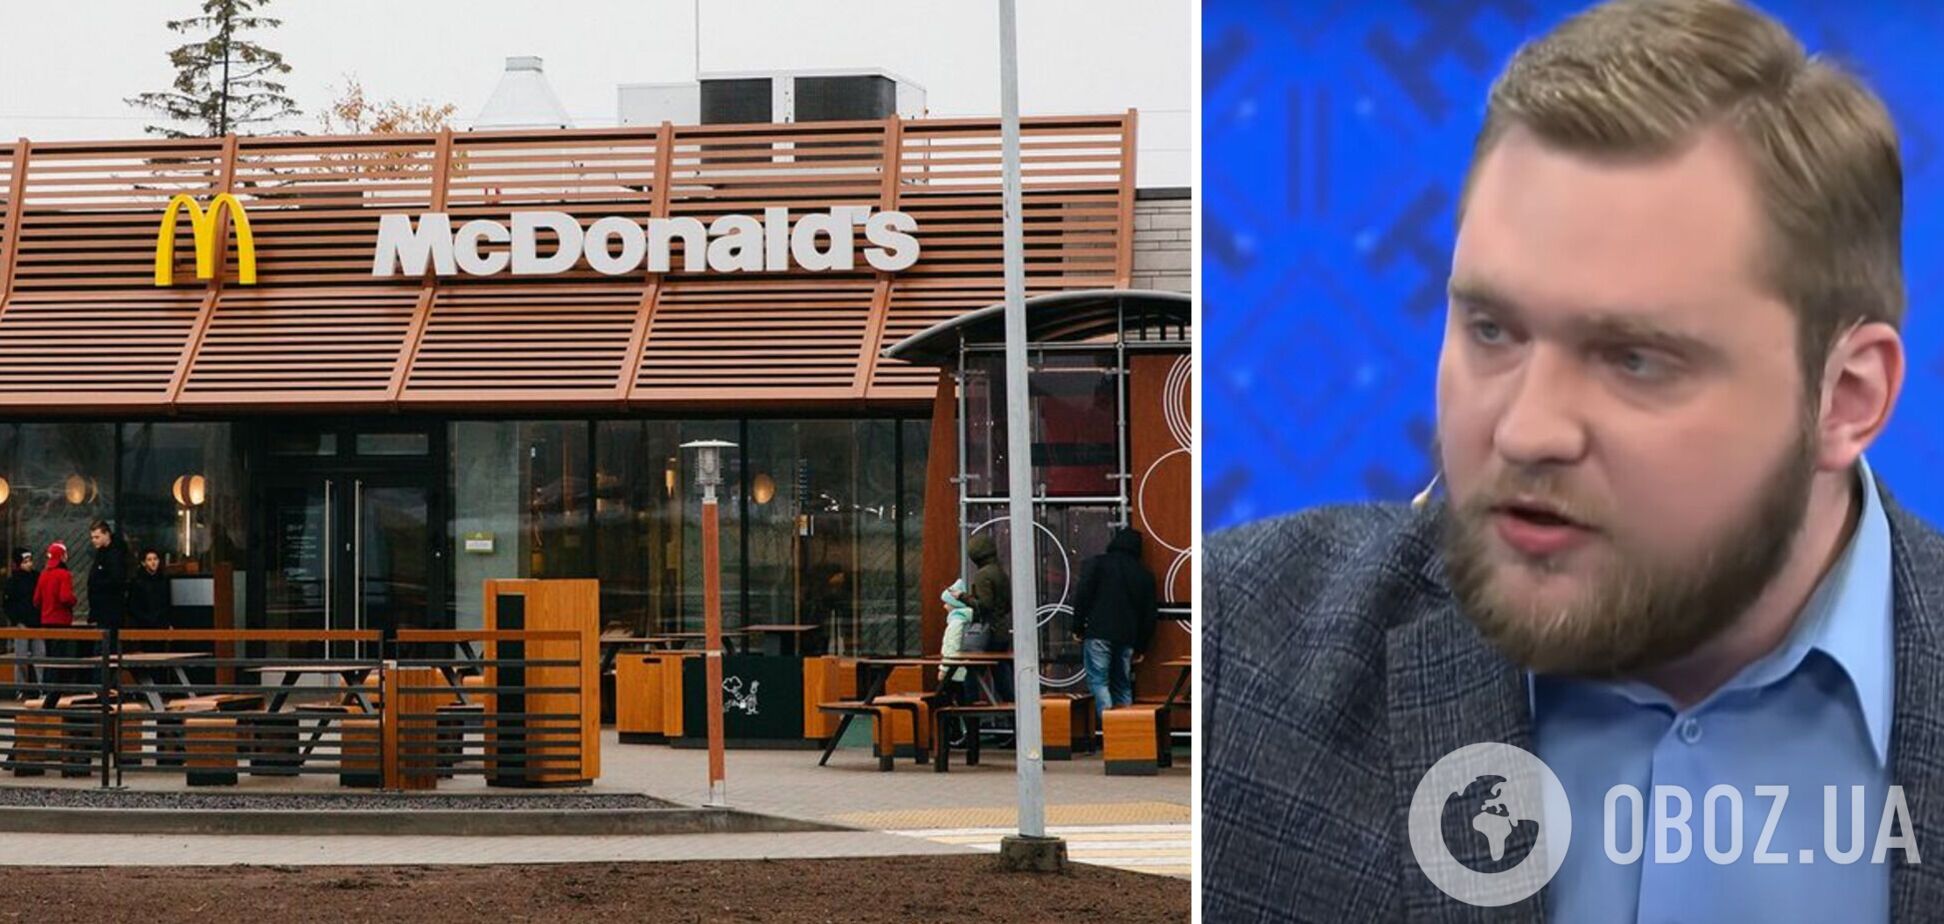 'Огнемет попал прямо в муравейник': белорусский пропагандист выдал 'феерическую' речь 'в честь' закрытия McDonald's. Видео